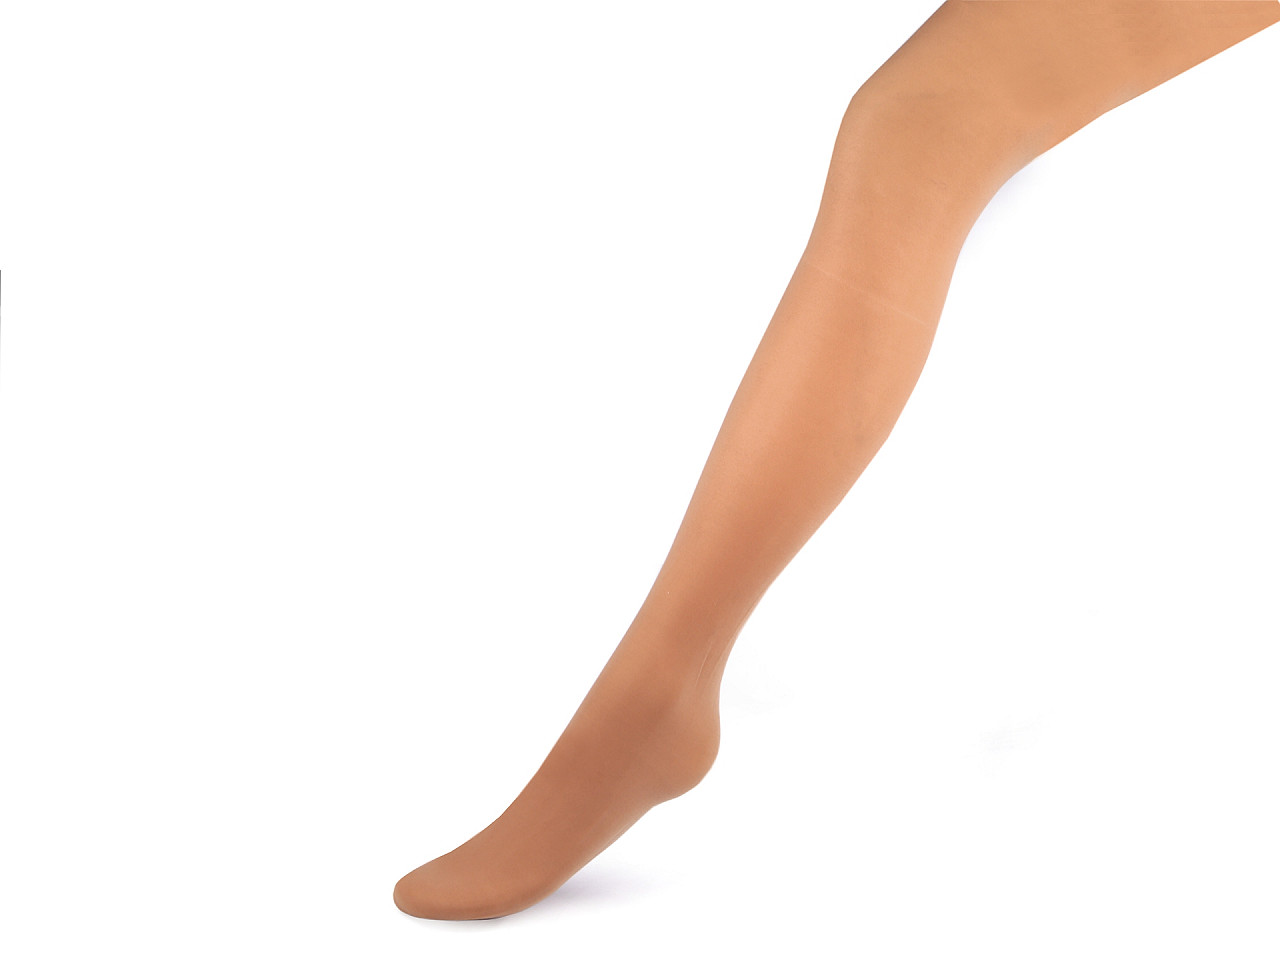 Ciorapi modelatori pentru femei 30den, Mărime: 4, visone, 1 buc